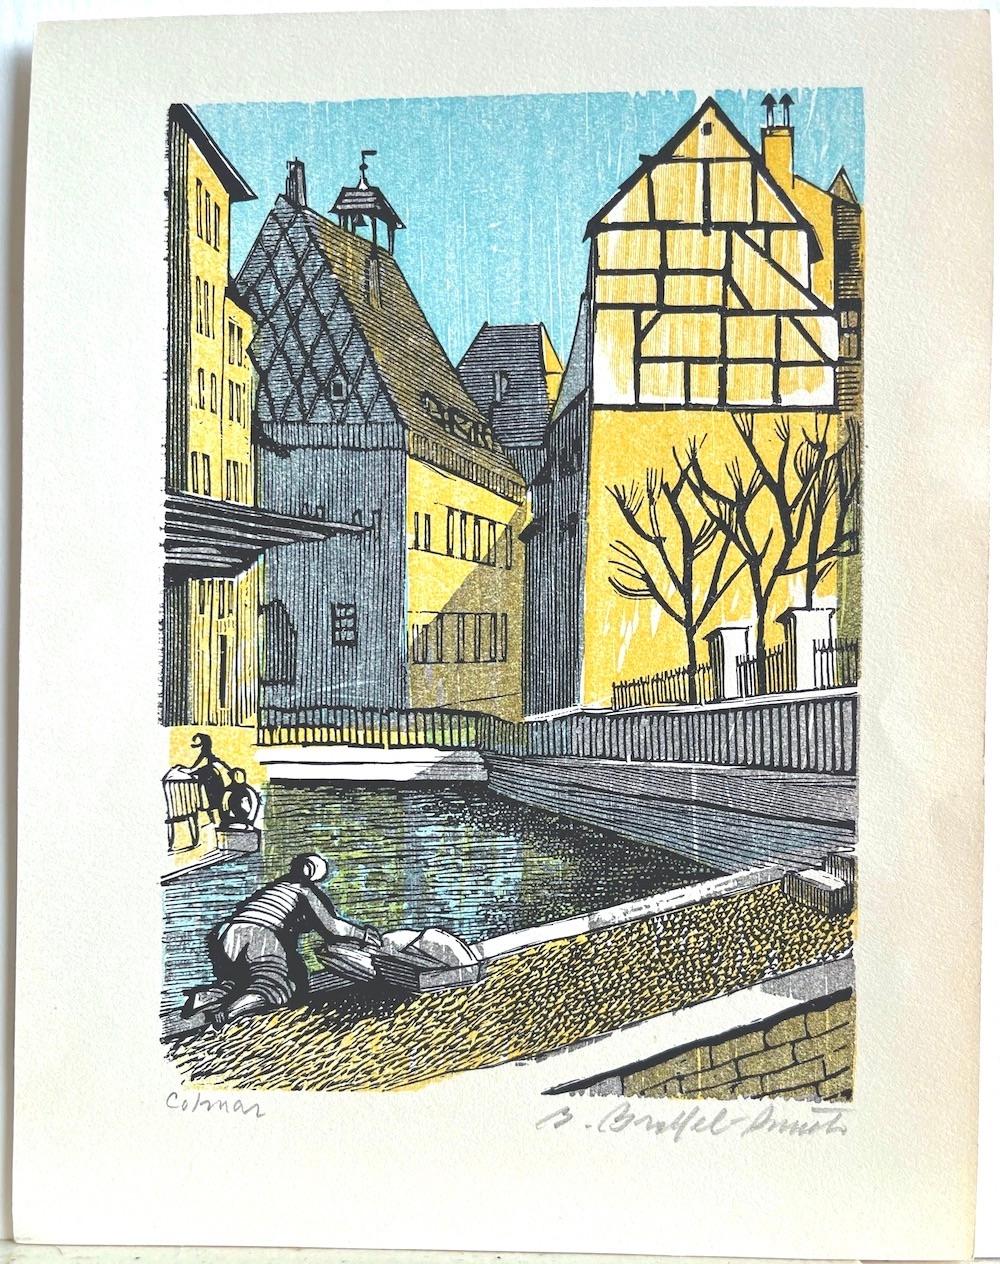 COLMAR ist ein Original-Holzstich des amerikanischen Künstlers Bernard Brussel-Smith, handgedruckt in gelber, hellblauer und schwarzer Tinte. COLMAR stellt eine malerische französische Dorfszene mit mittelalterlichen Fachwerkhäusern, einem Kanal und